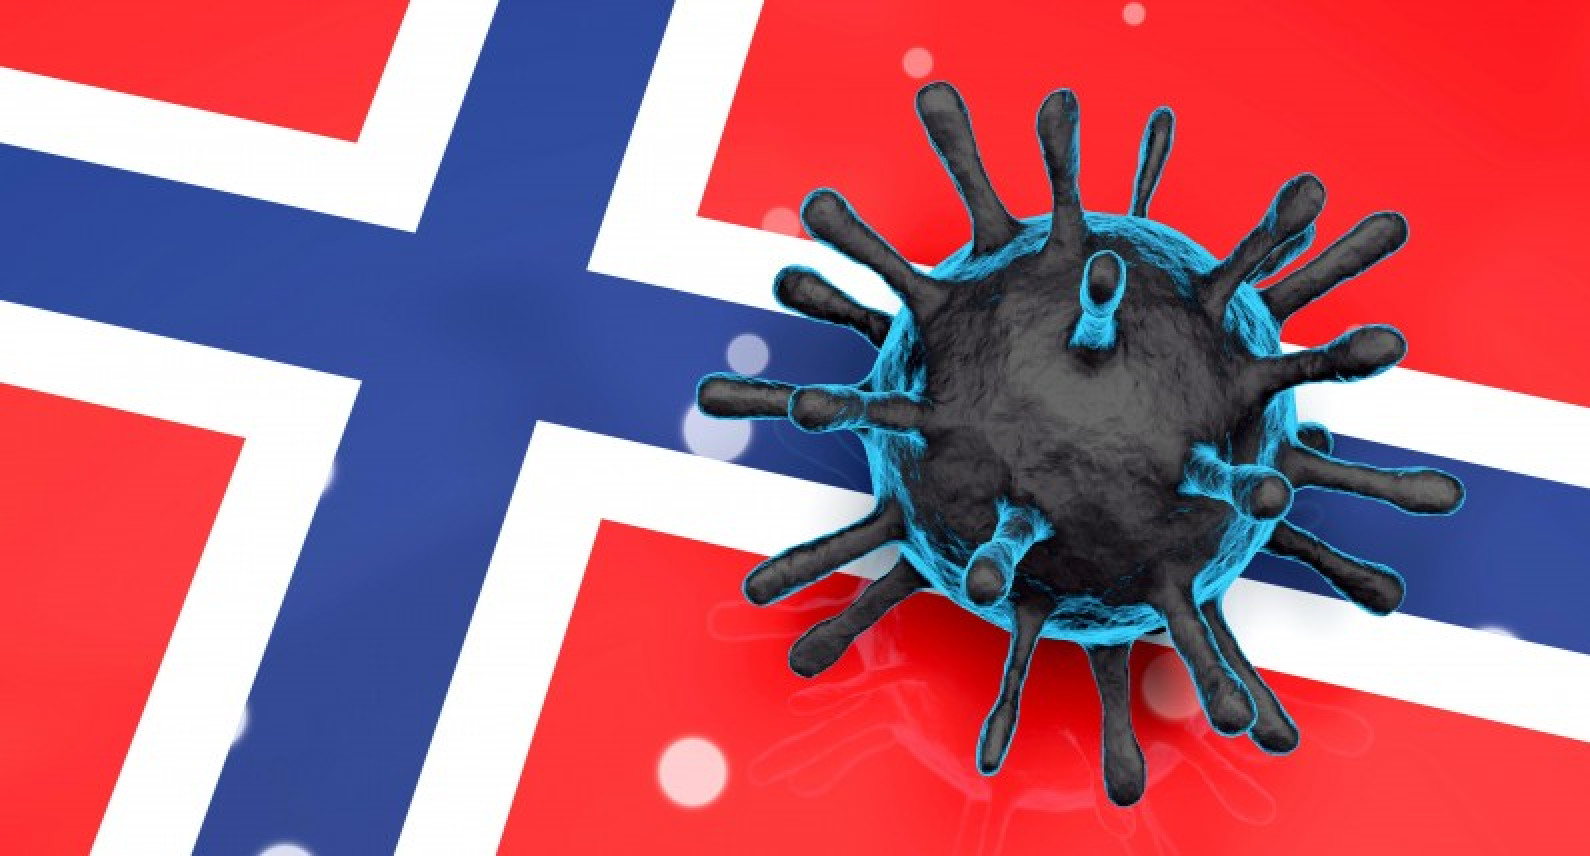 Gwałtowny wzrost infekcji w Norwegii: najwięcej zarażonych koronawirusem od początku stycznia